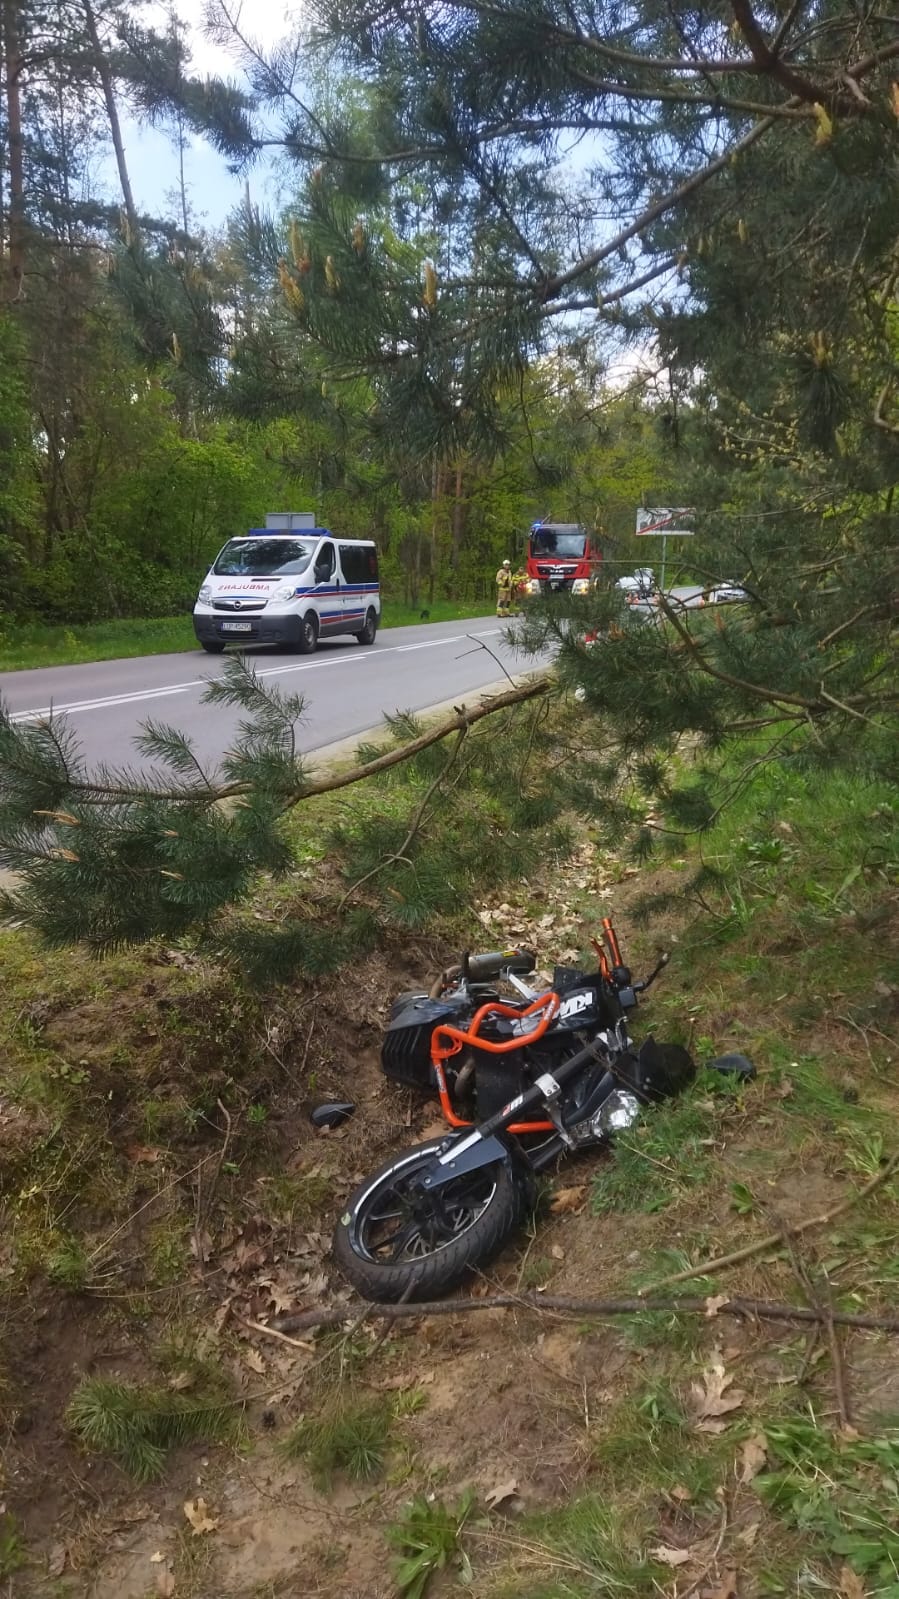 Motocyklista wypadł z drogi i uderzył w drzewo. Zginął na miejscu (zdjęcia)